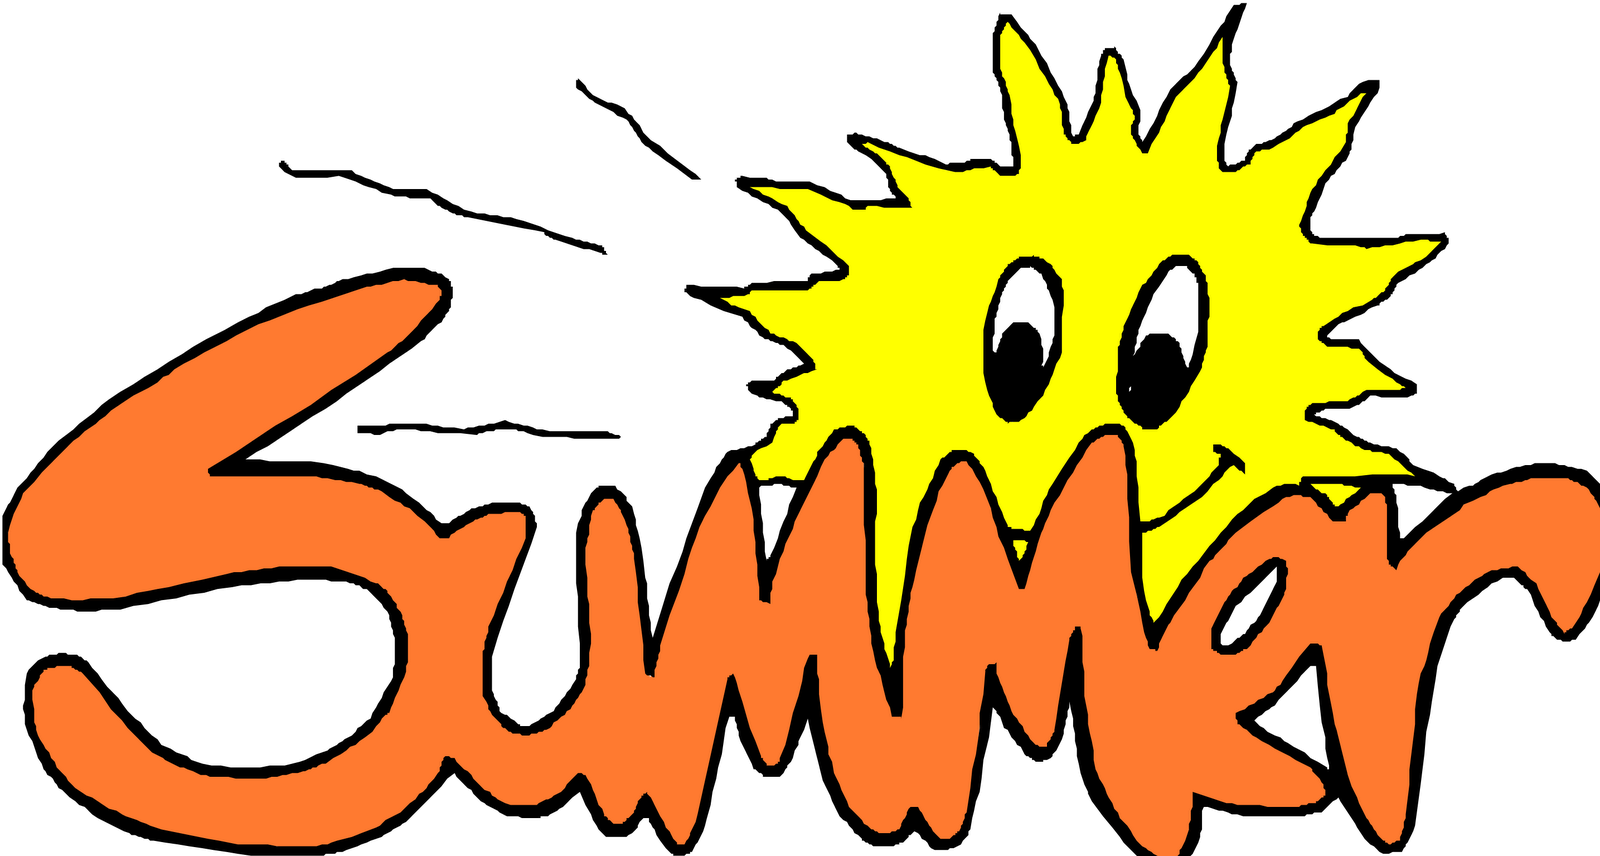 Summer Solstice Clipart | Free Download Clip Art | Free Clip Art ...